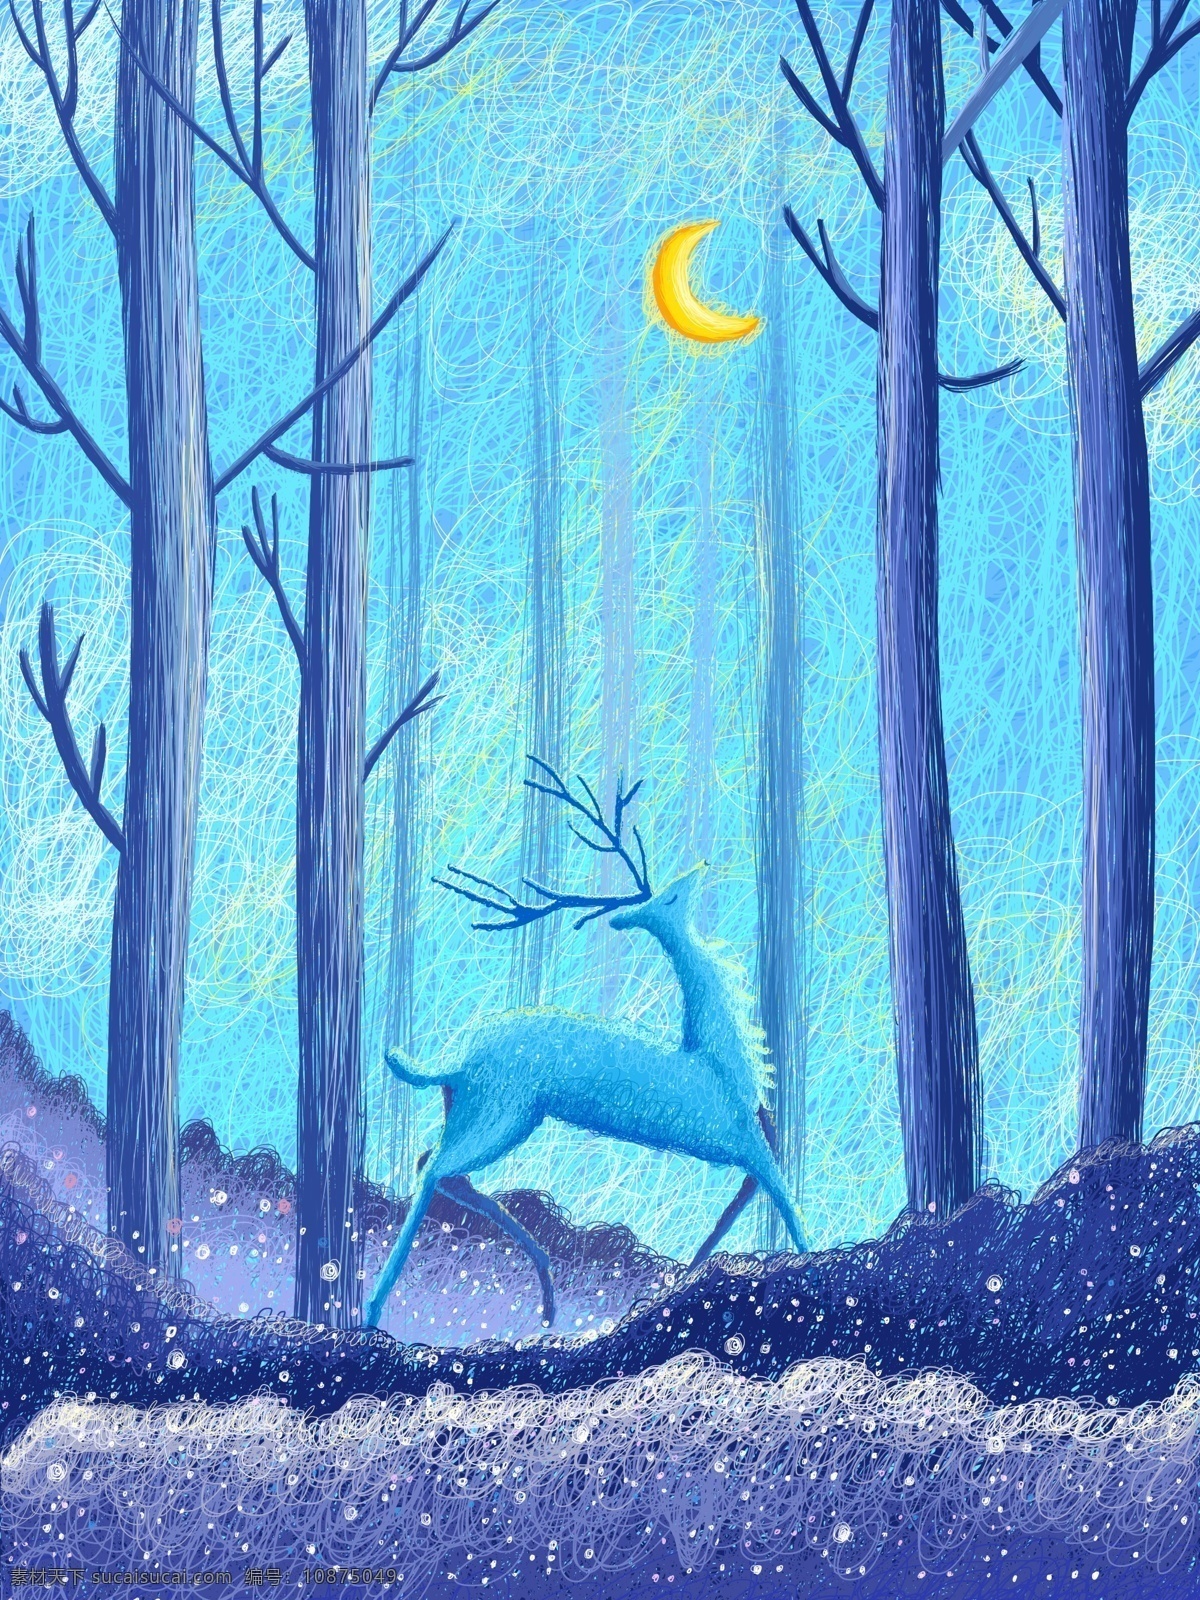 线圈 印象 森林 鹿 治愈 插画 蓝色 月亮 唯美 浪漫 森林与鹿 线圈印象 线圈画